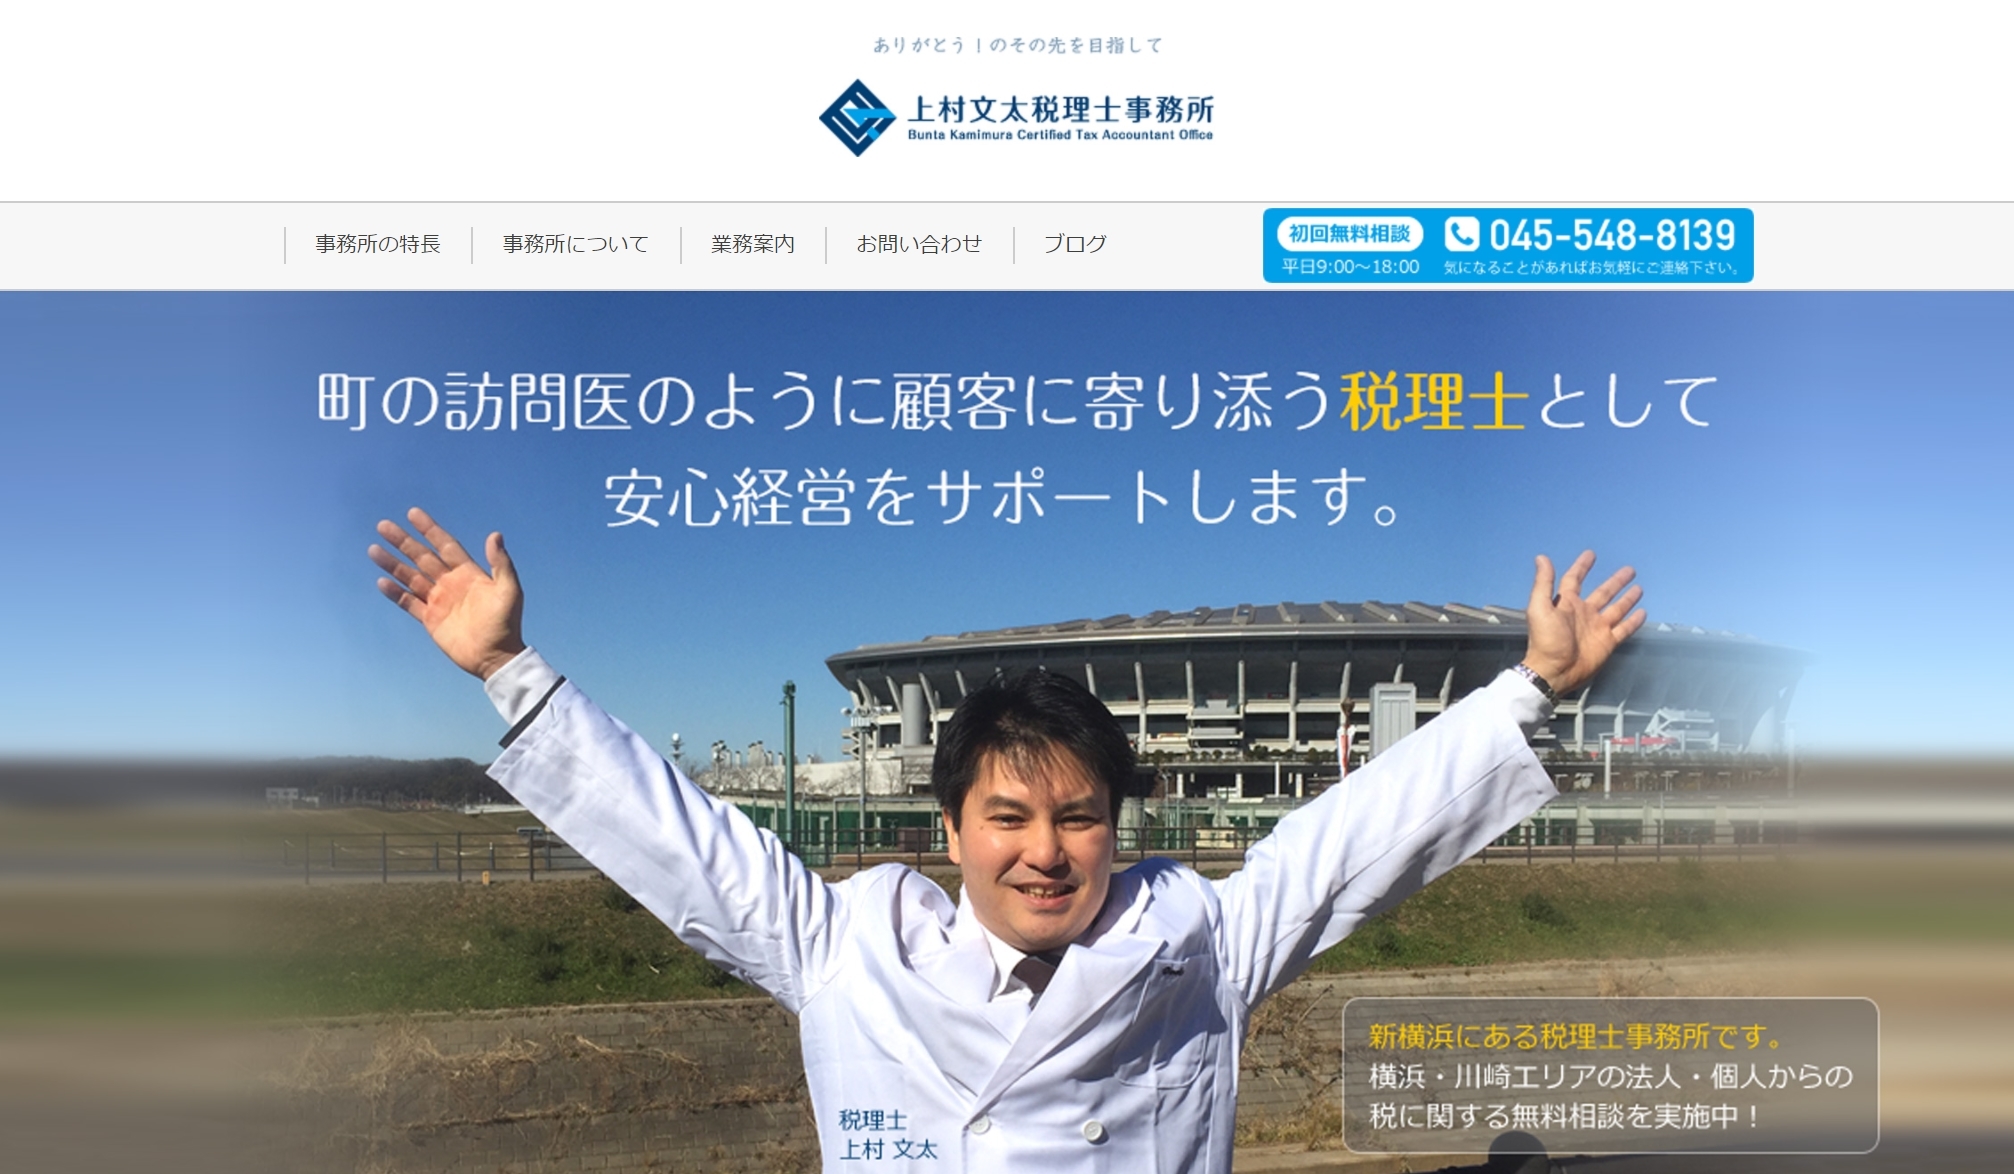 新規設立の税理士事務所「上村文太税理士事務所」のホームページをレスポンシブPlanで制作